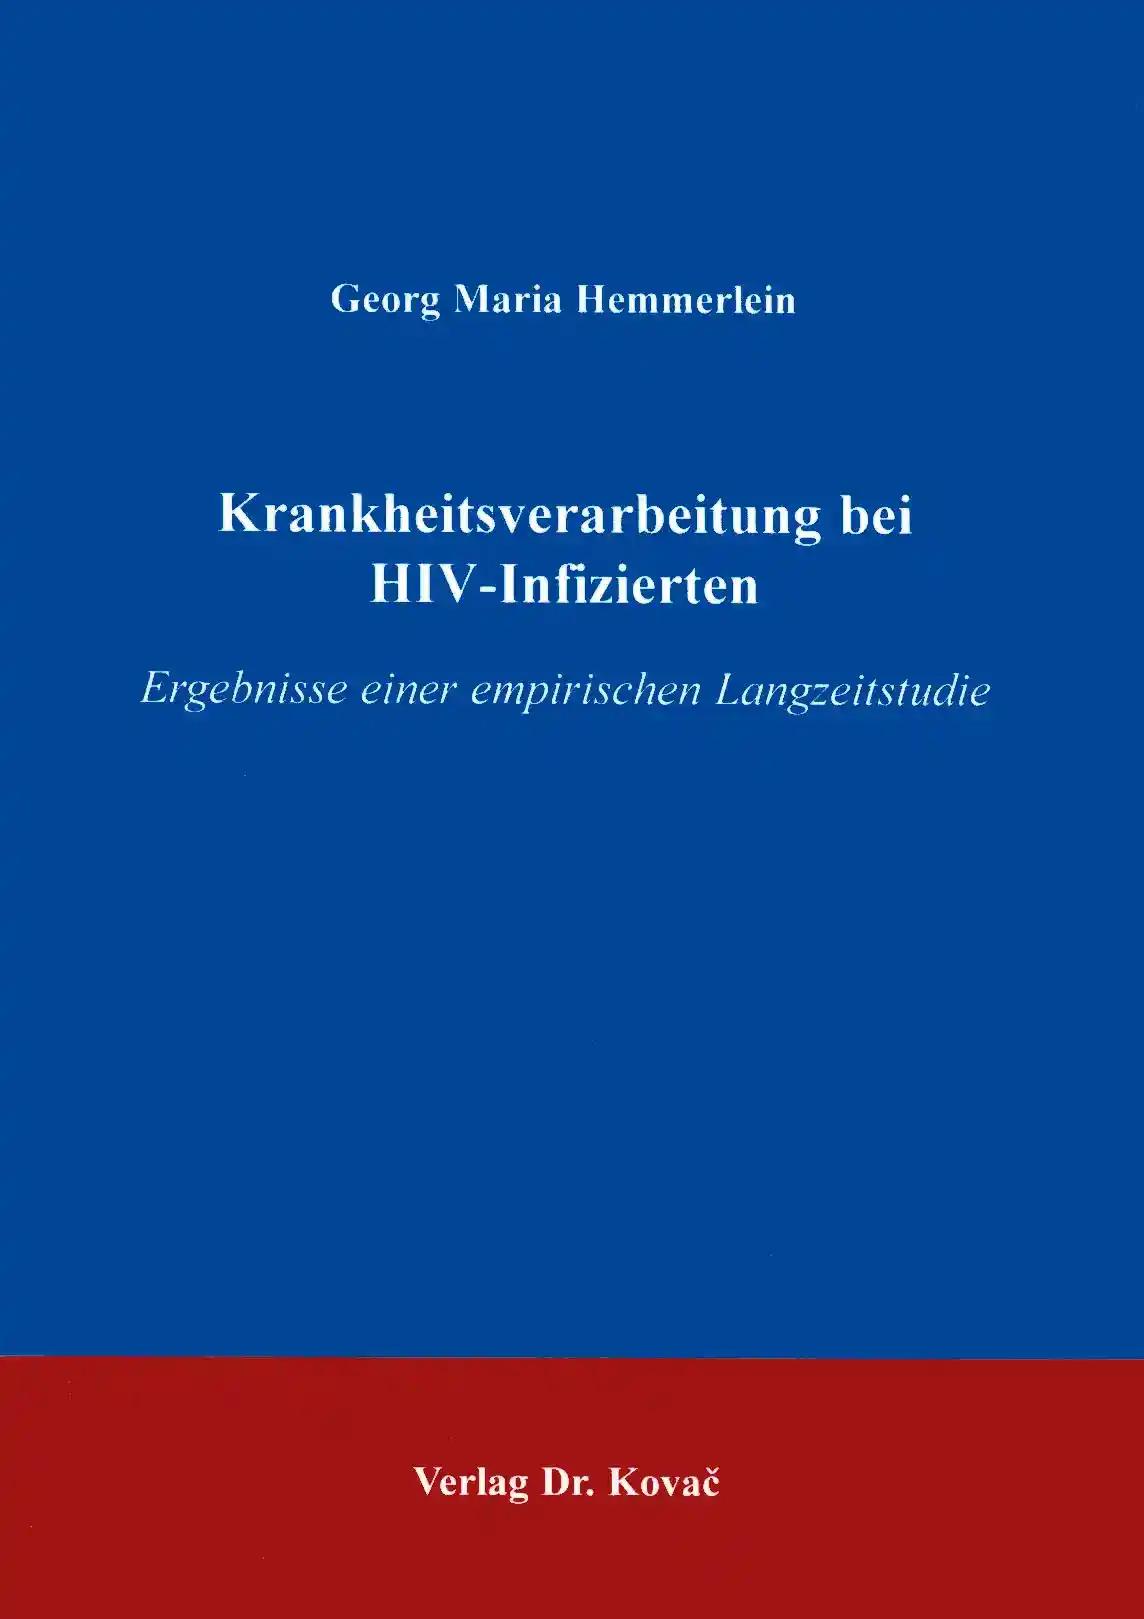 Krankheitsverarbeitung bei HIV-Infizierten, Ergebnisse einer empirischen Langzeitstudie - Georg Maria Hemmerlein